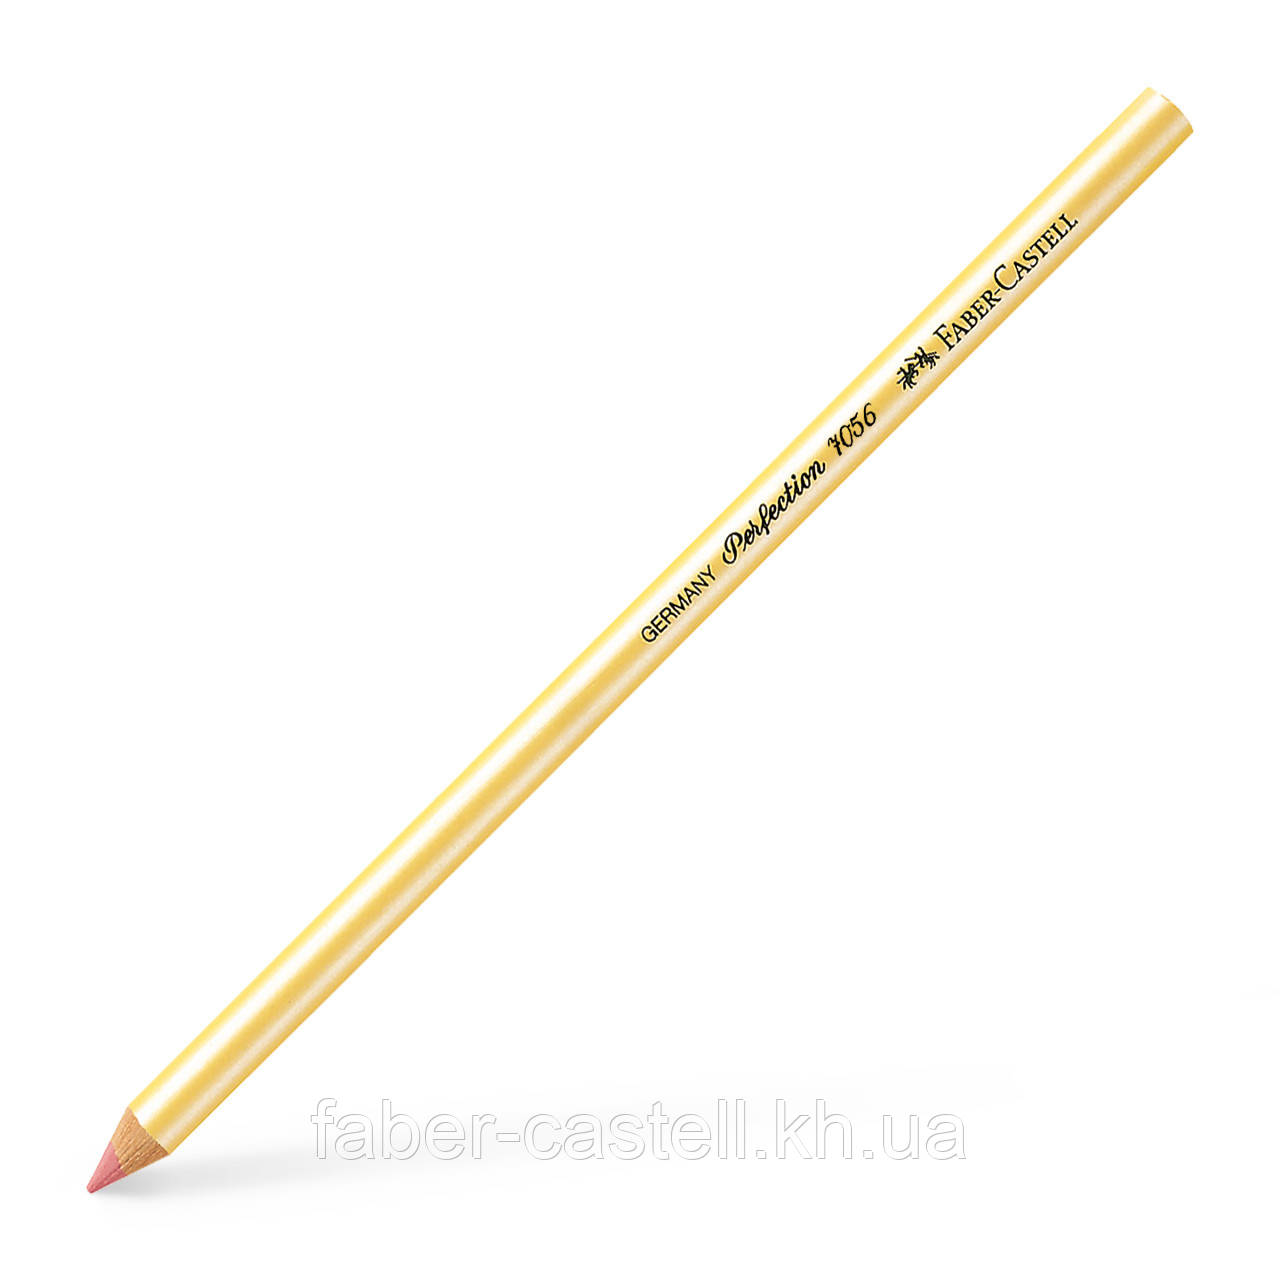 Ластик-олівець Faber-Castell Perfection 7056 для графітного грифеля та вугілля, 185612